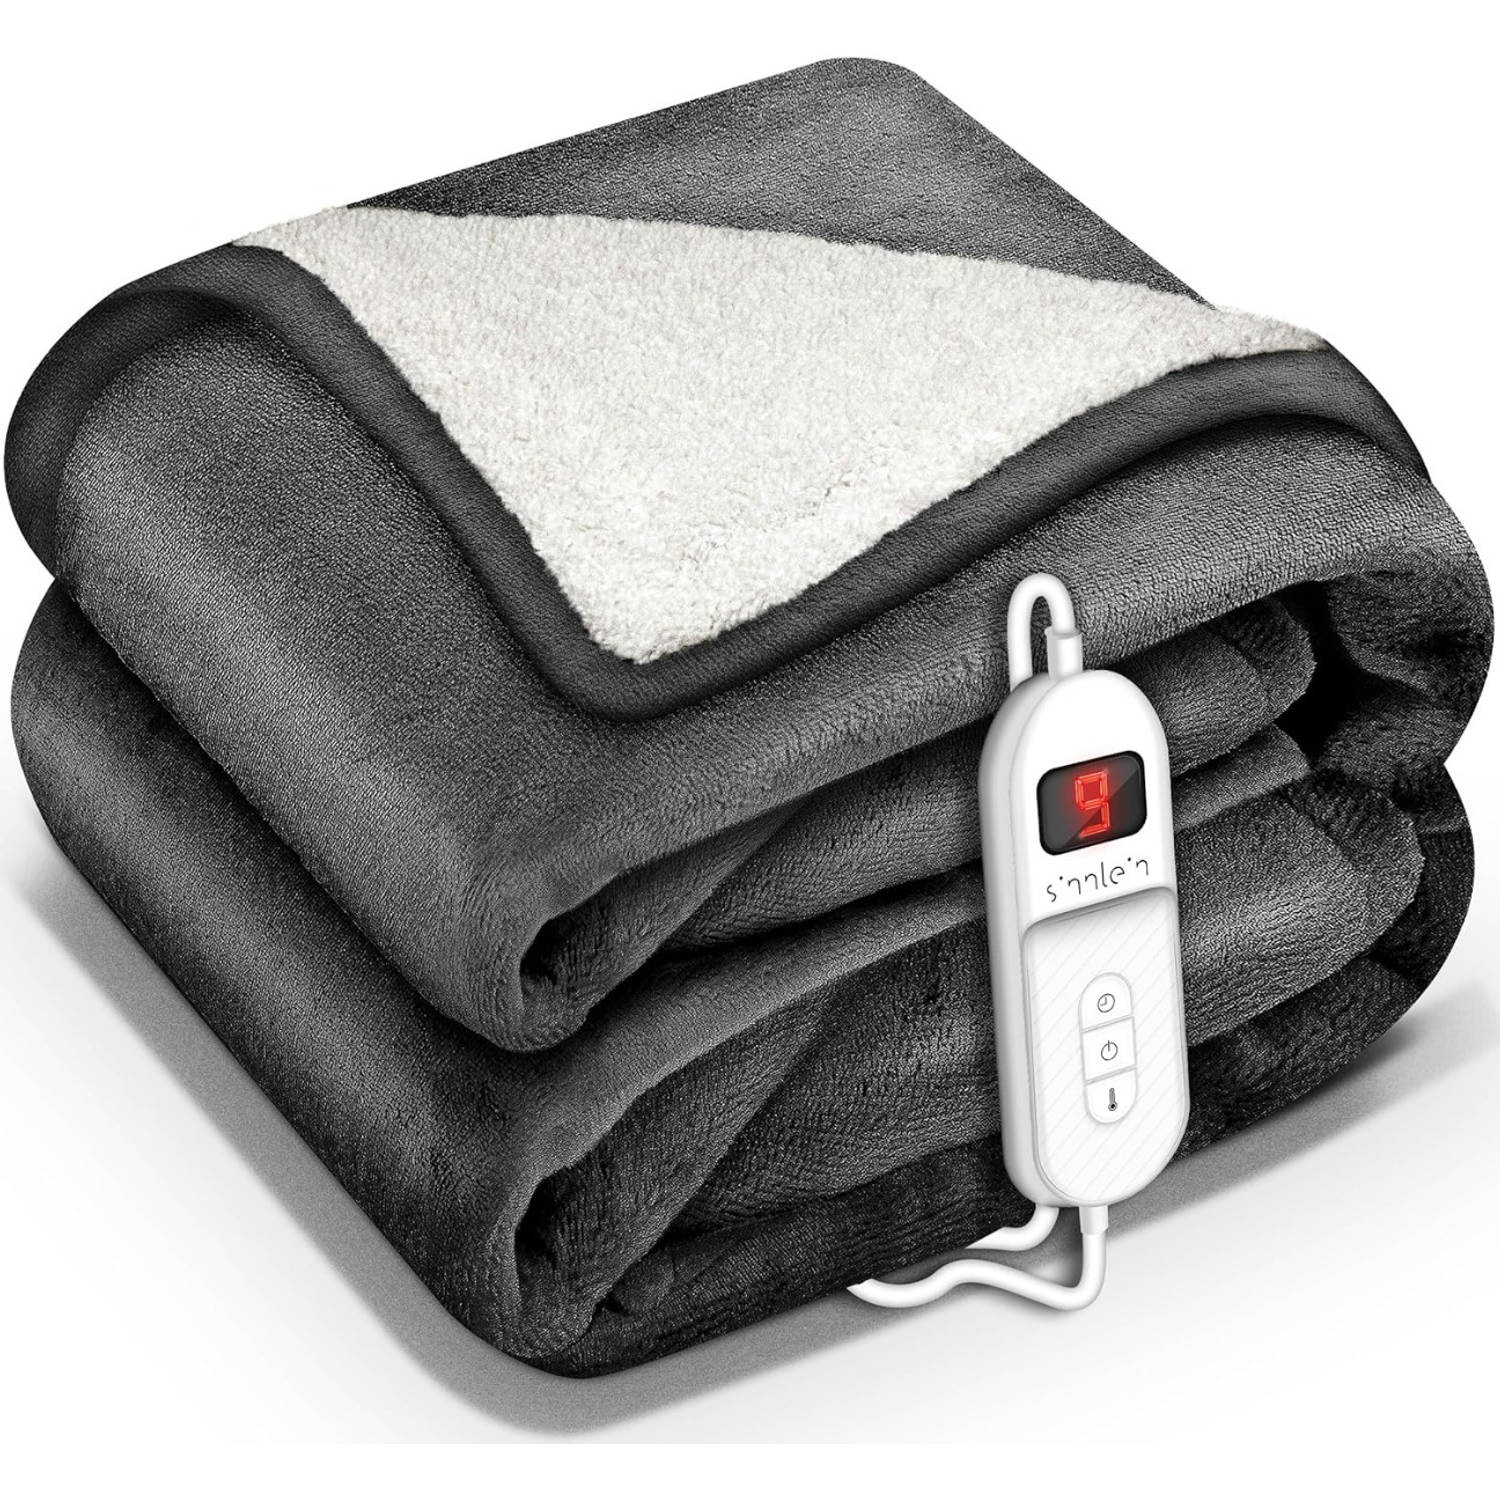 Sinnlein- Elektrische deken met automatische uitschakeling, antraciet, 180x130 cm, warmtedeken met 9